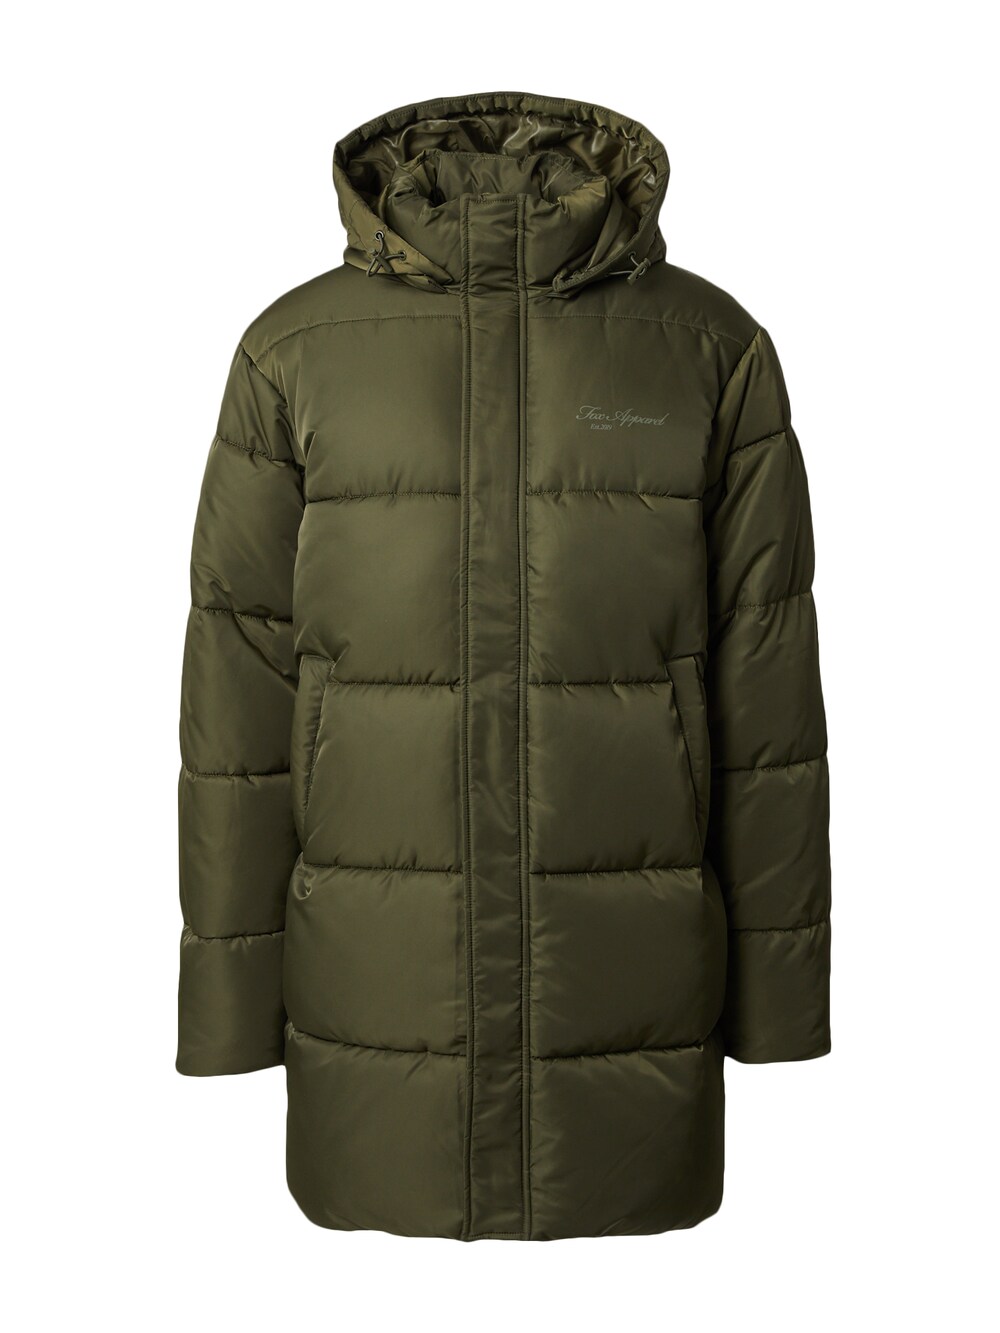 Зимнее пальто DAN FOX APPAREL Alessio, оливковый/темно-зеленый